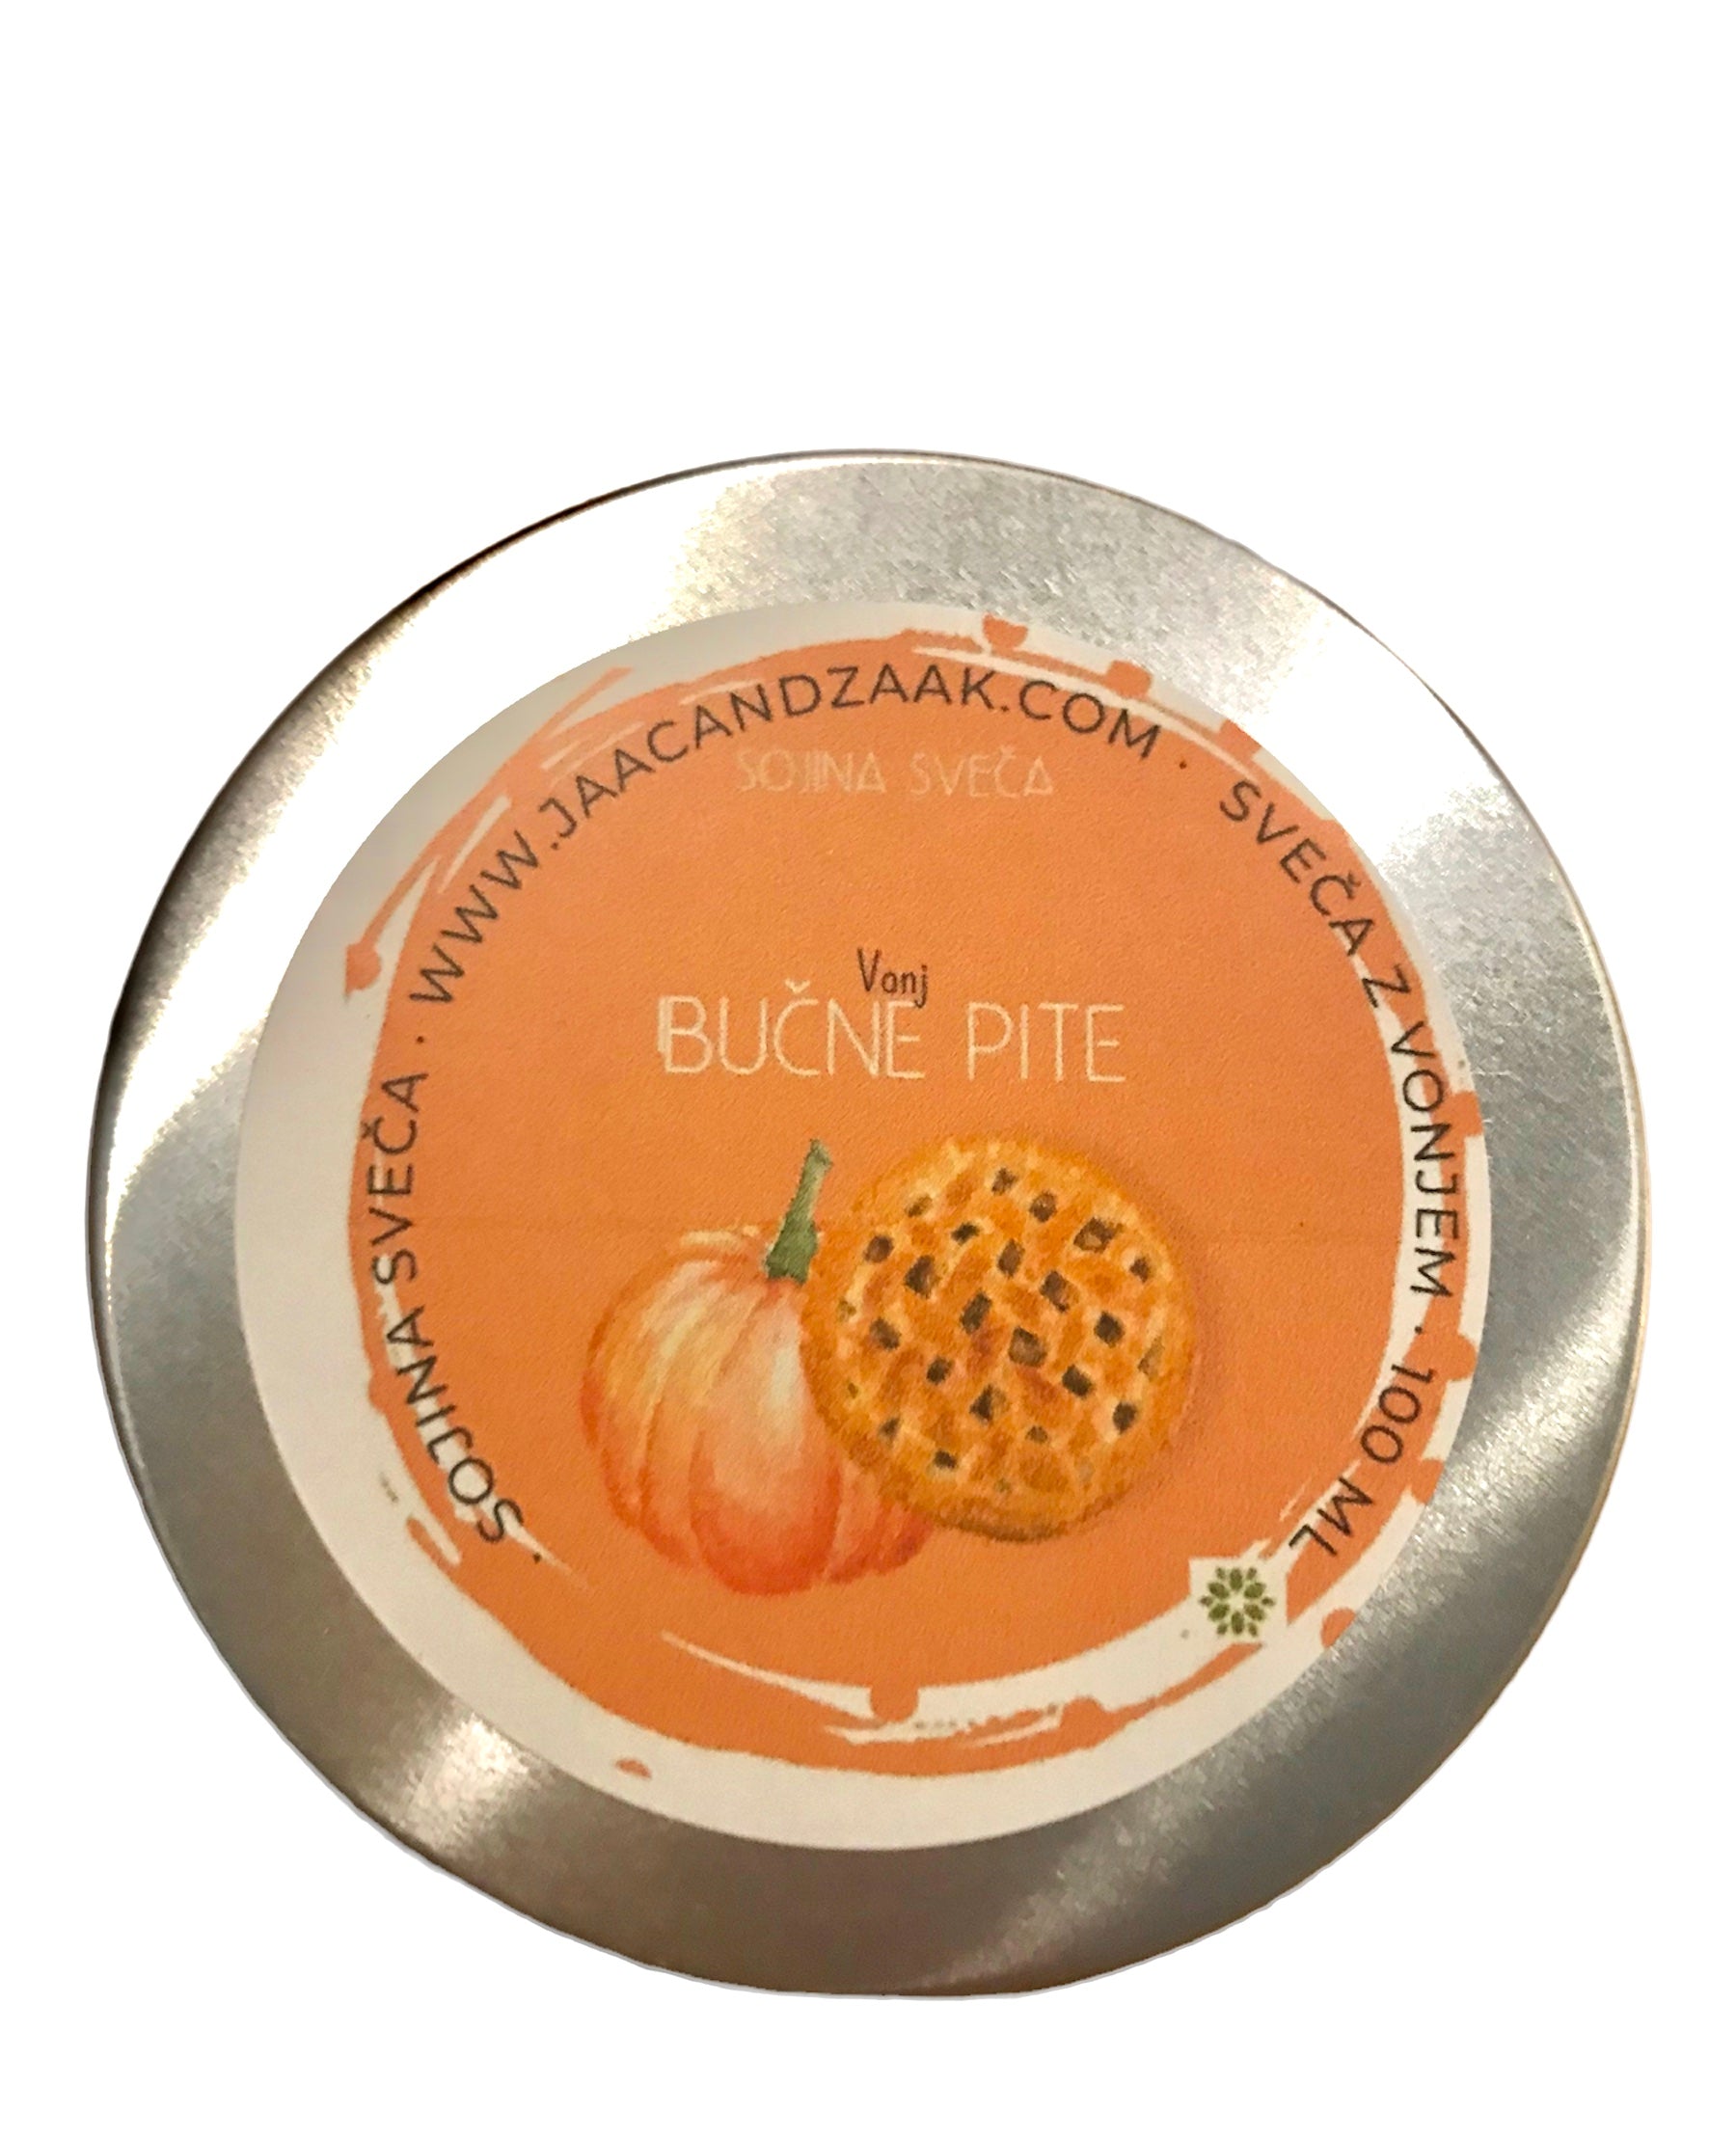 AUTUMN CANDLE - scent: nutmeg, clove, cinnamon, eucalyptus (limited edition)